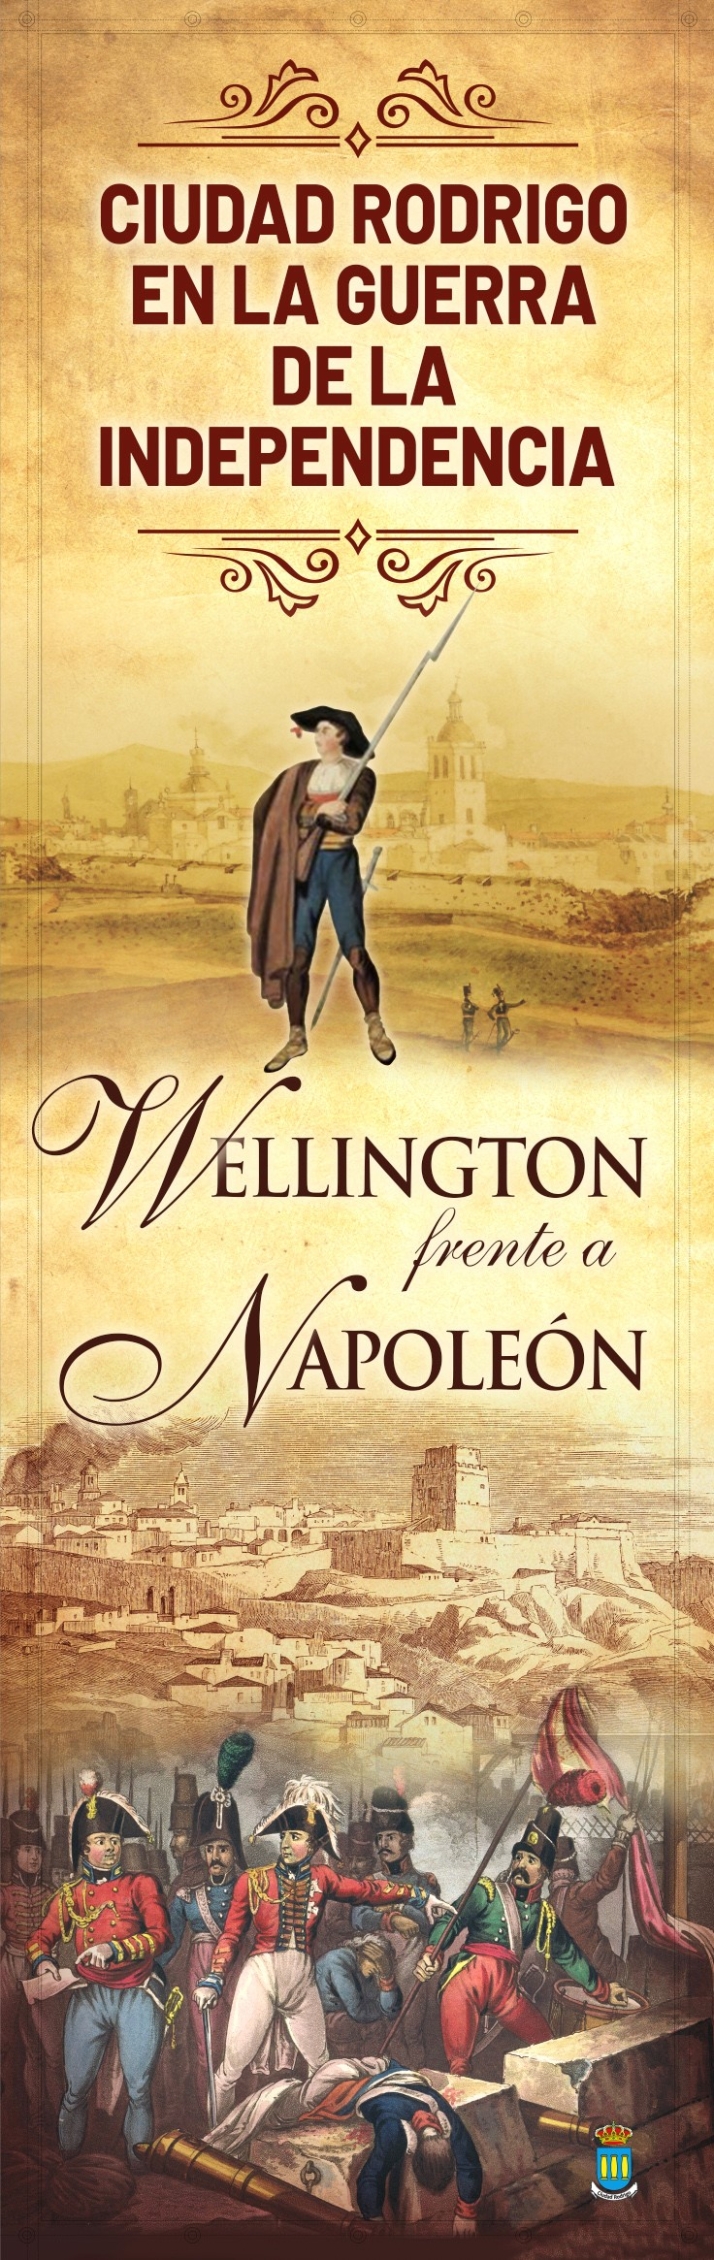 &lsquo;Wellington frente a Napole&oacute;n&rsquo; inaugurar&aacute; este martes su nueva etapa en la Casa de la Cultura | Imagen 1